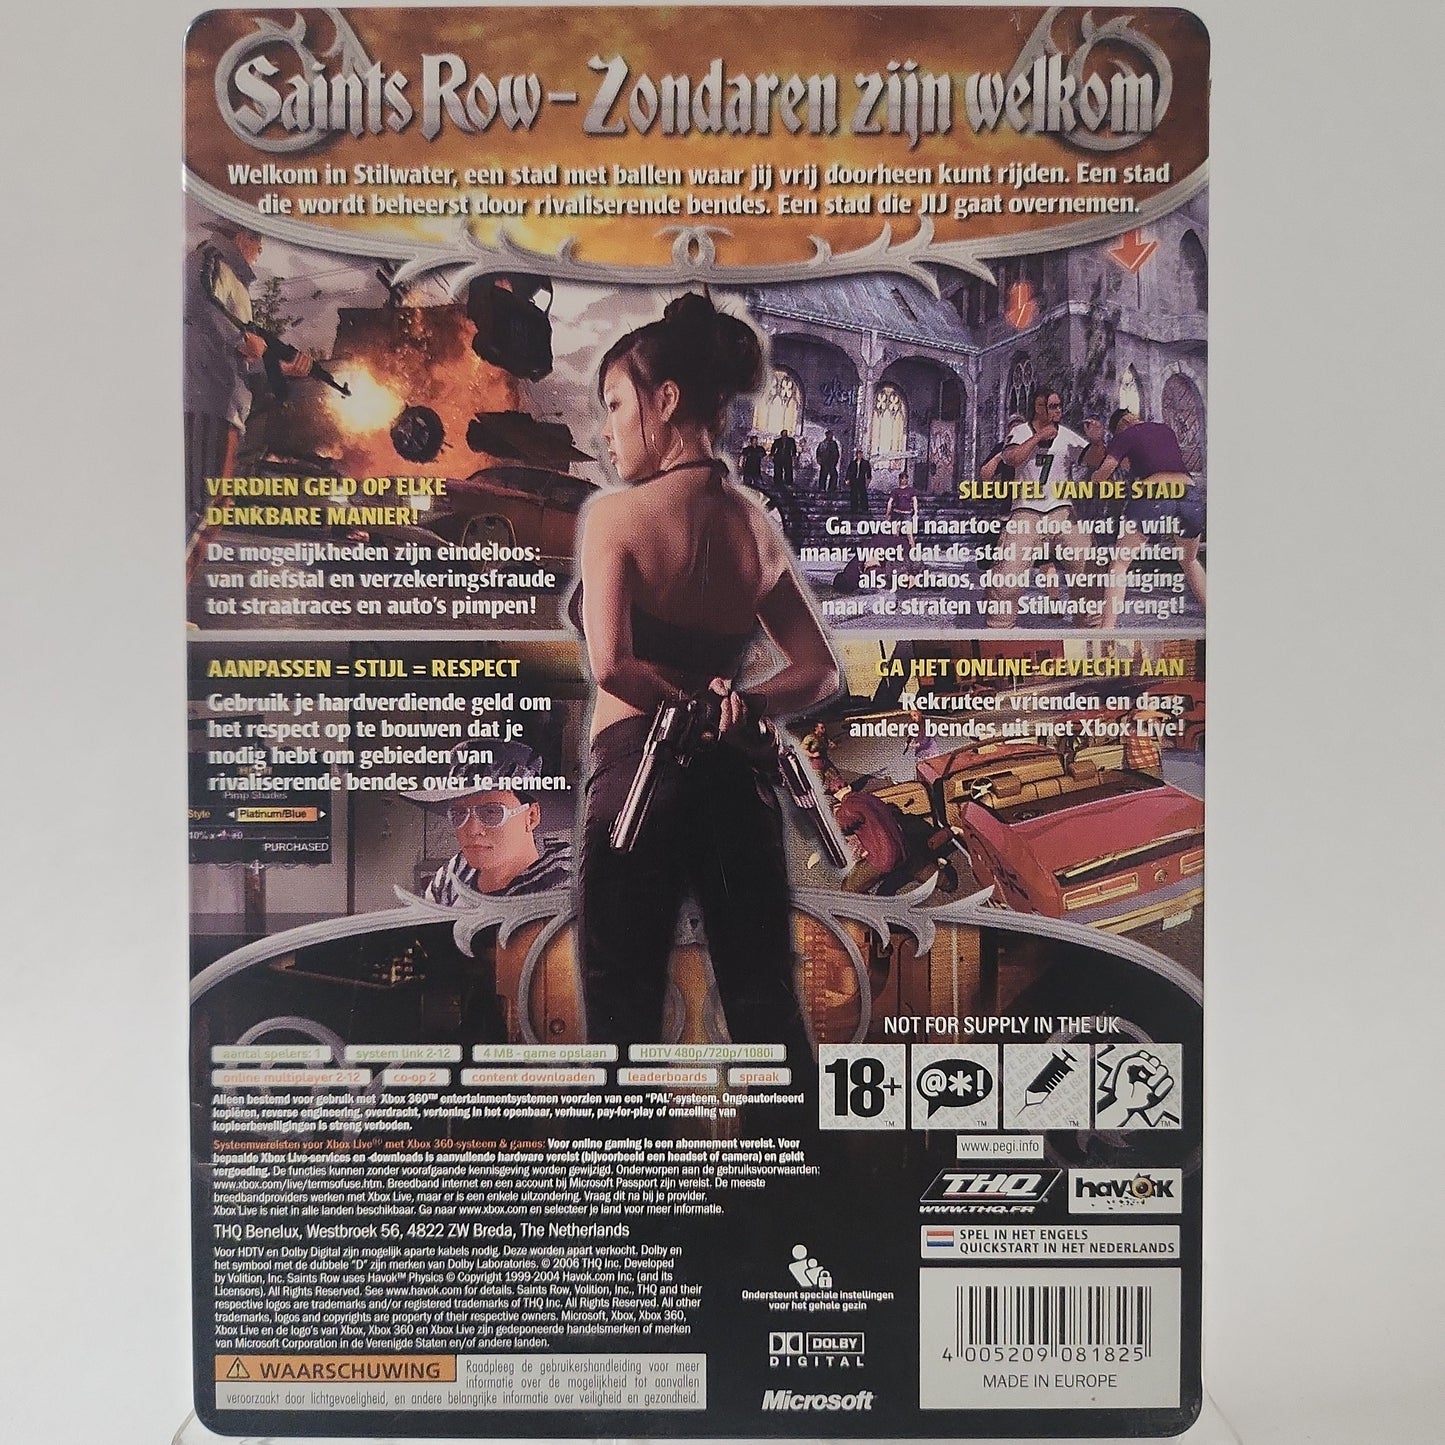 Saints Row Steelcase Xbox 360